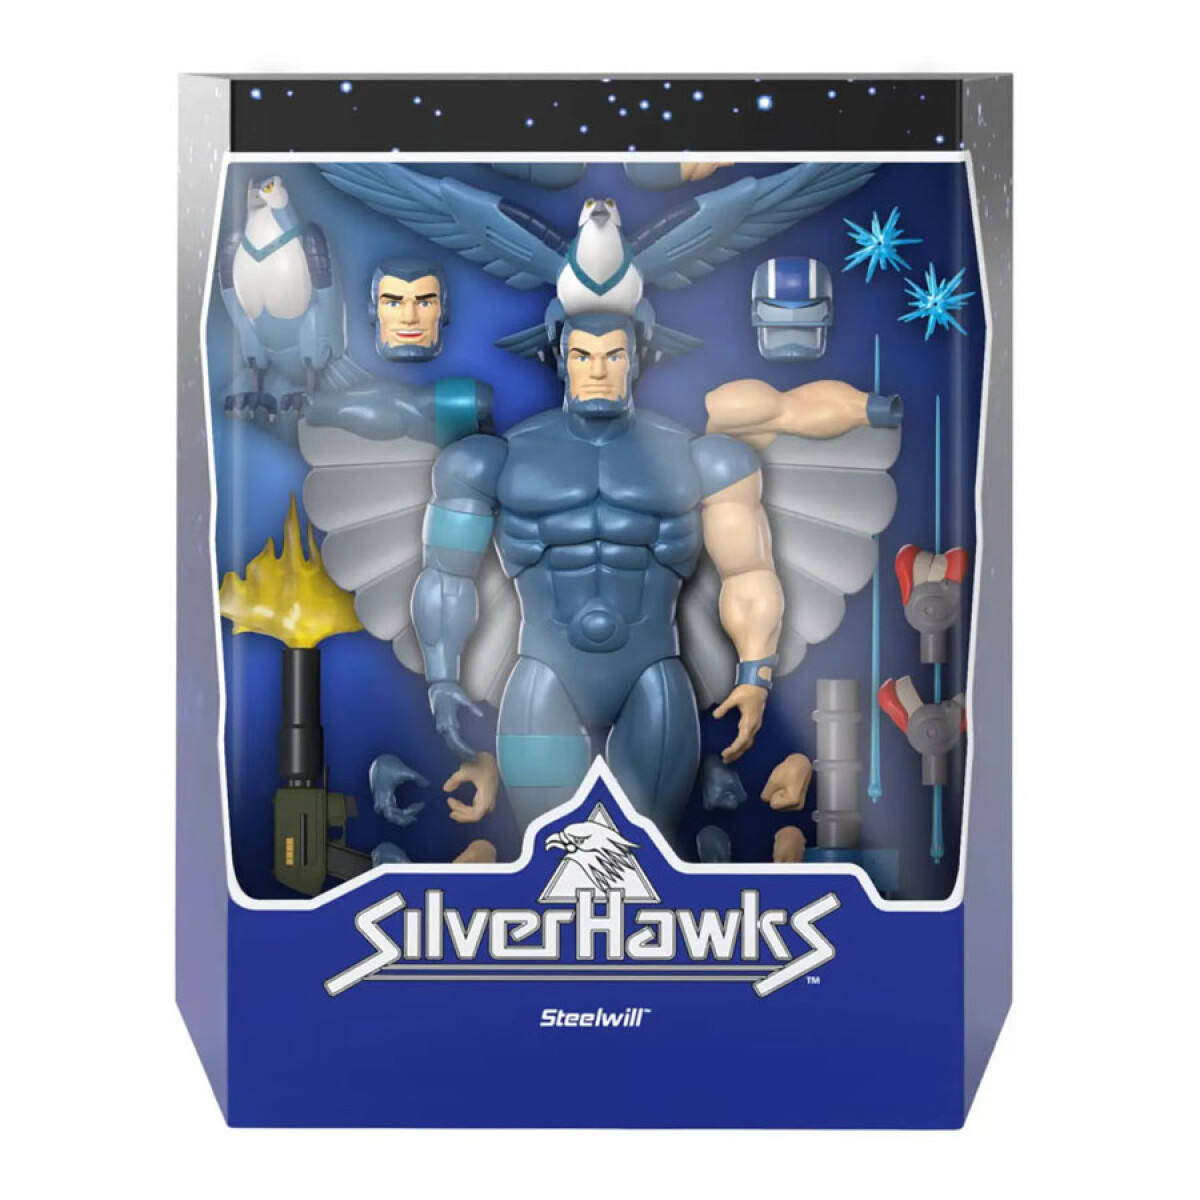 SilverHawks • Steelwill 7" Scale Figure 